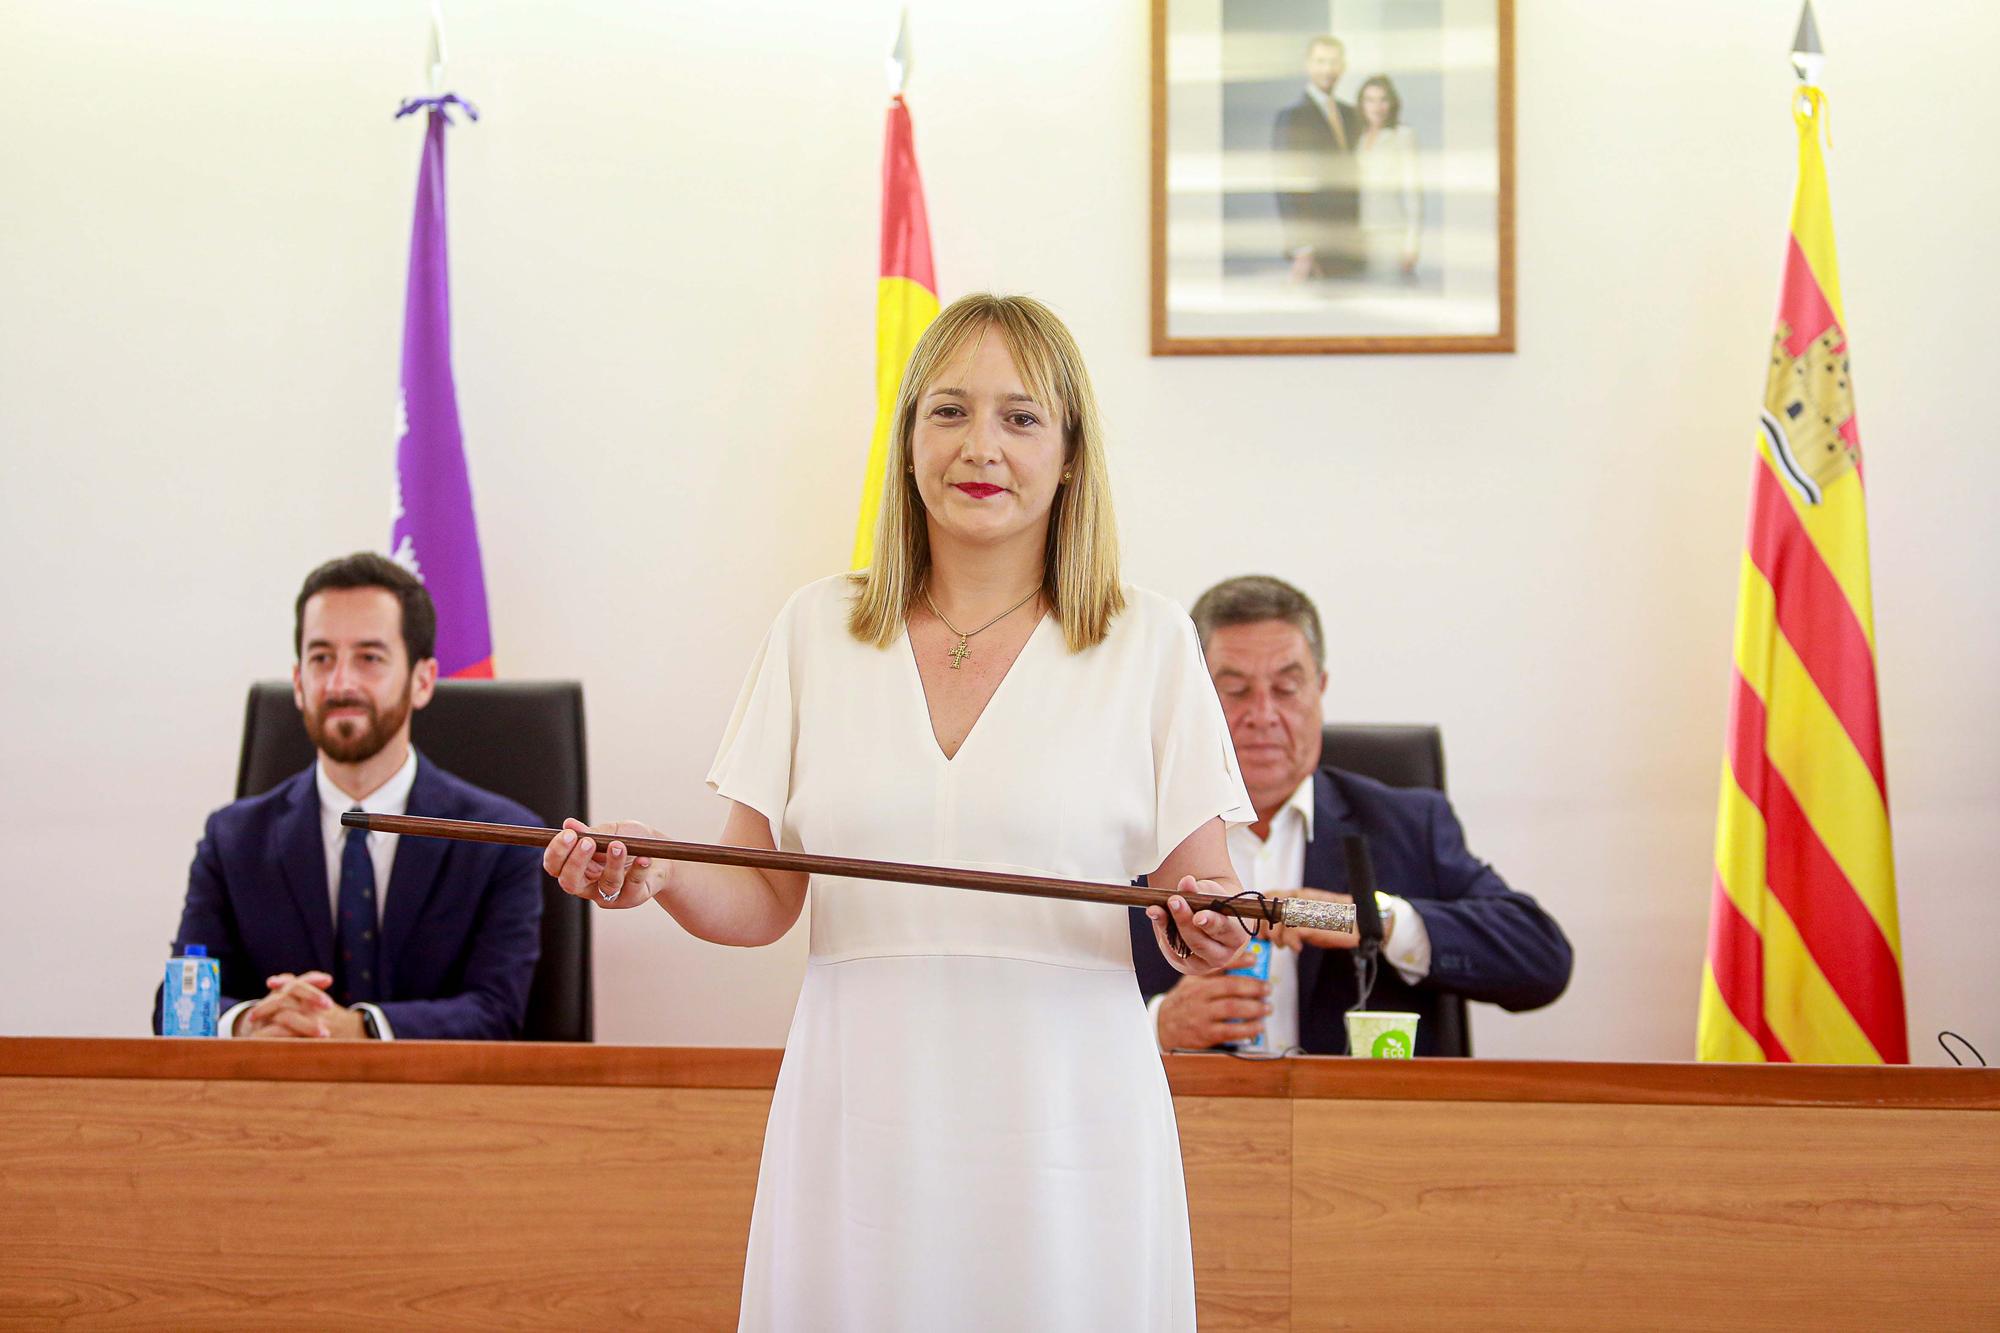 Mira aquí las imágenes de la toma de posesión de Tania Marí como alcaldesa de Sant Joan